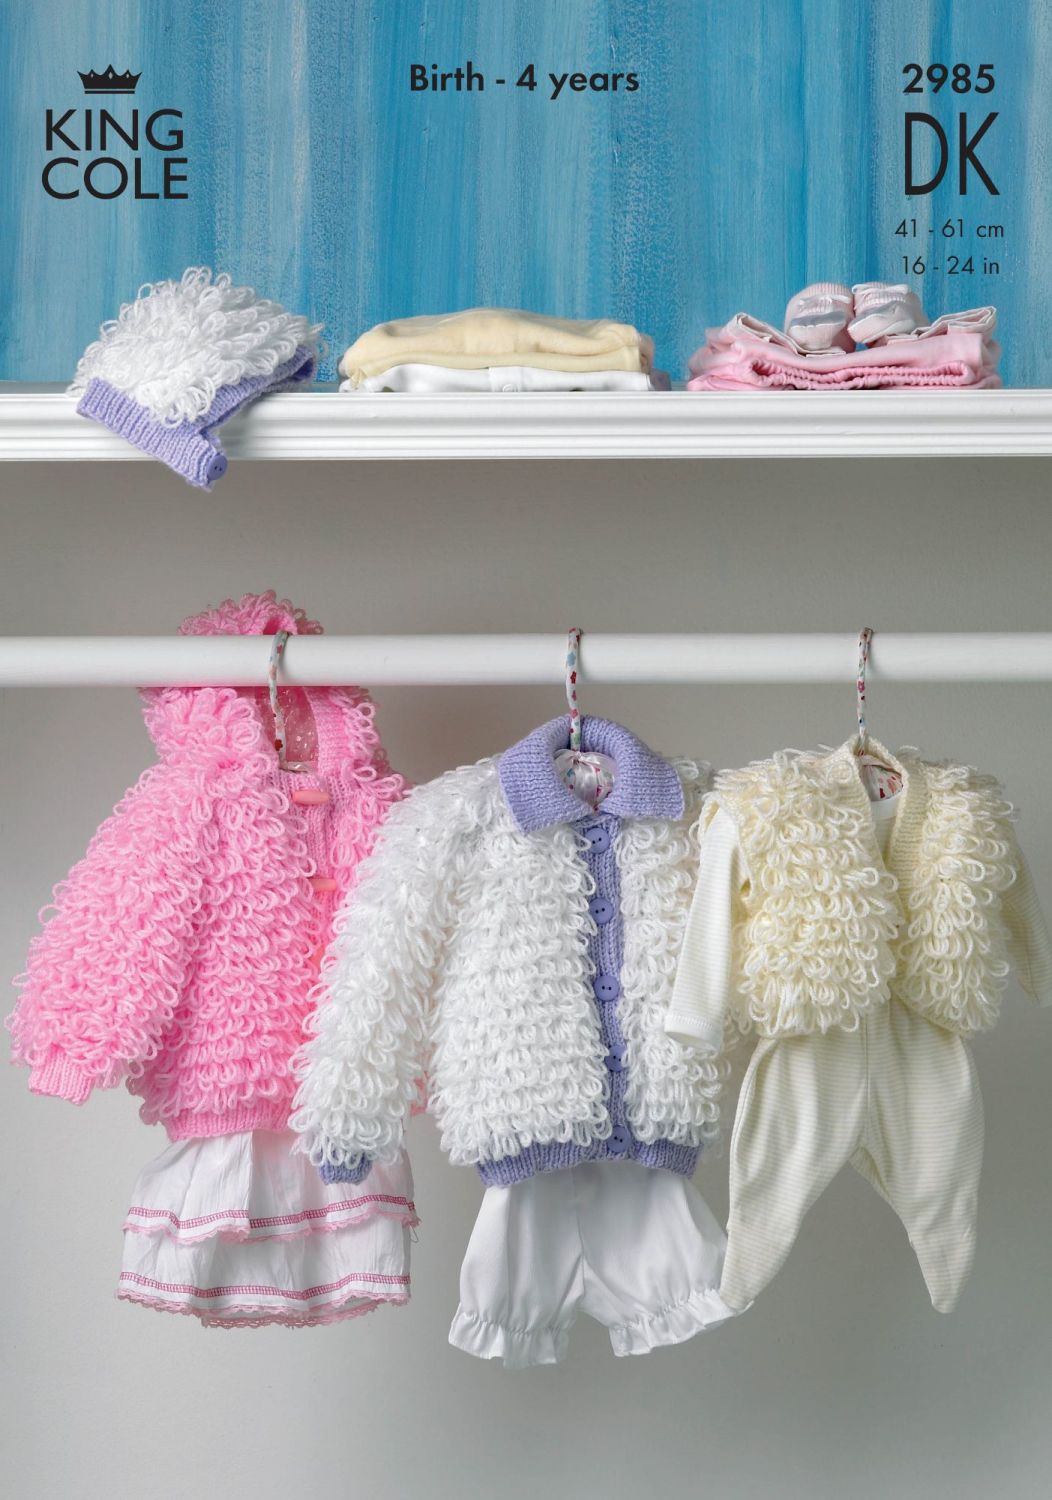 2985 DK - Knitting Pattern Babies